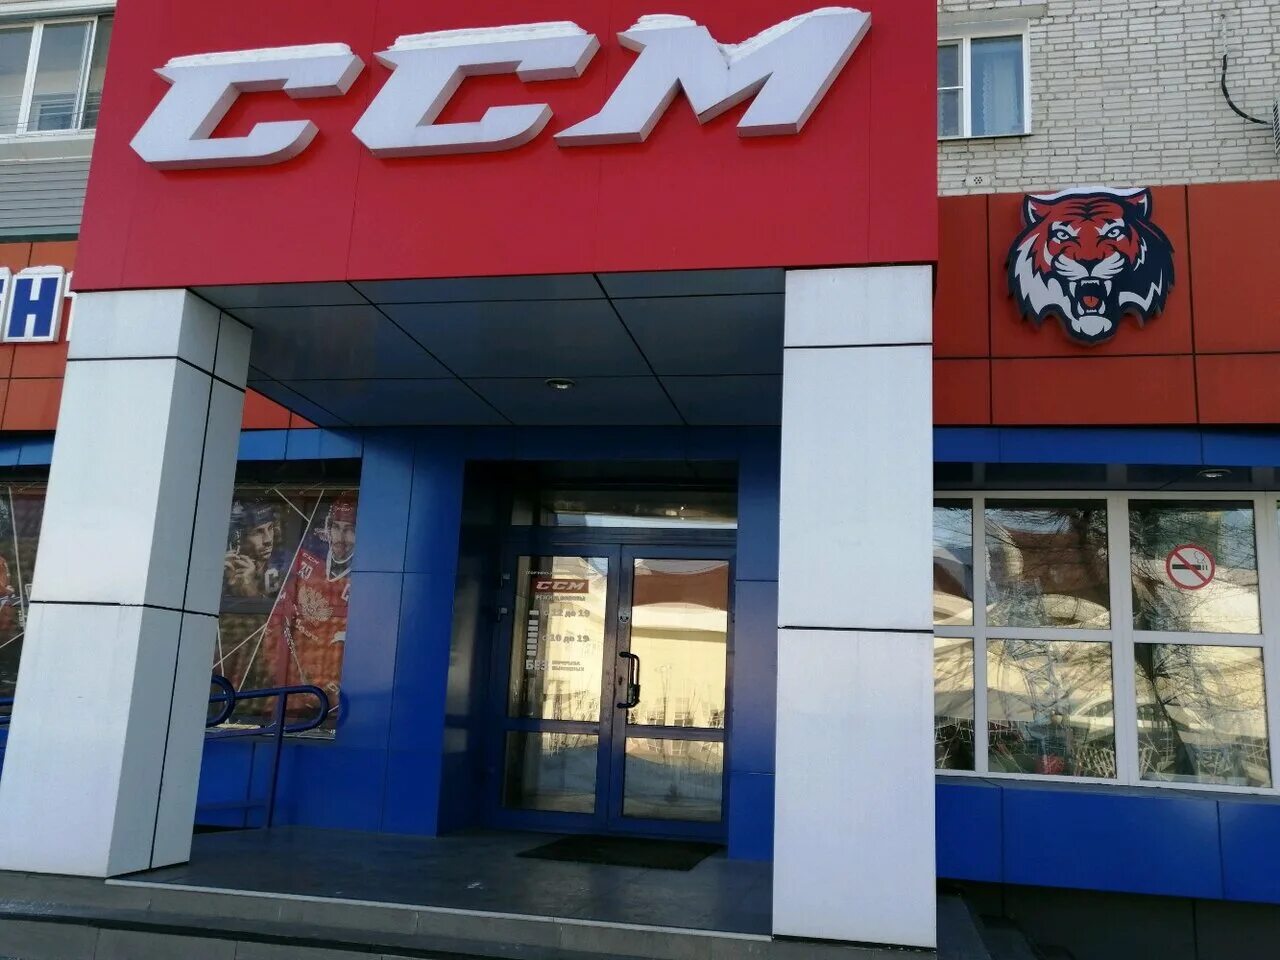 Спортивные магазины хабаровск